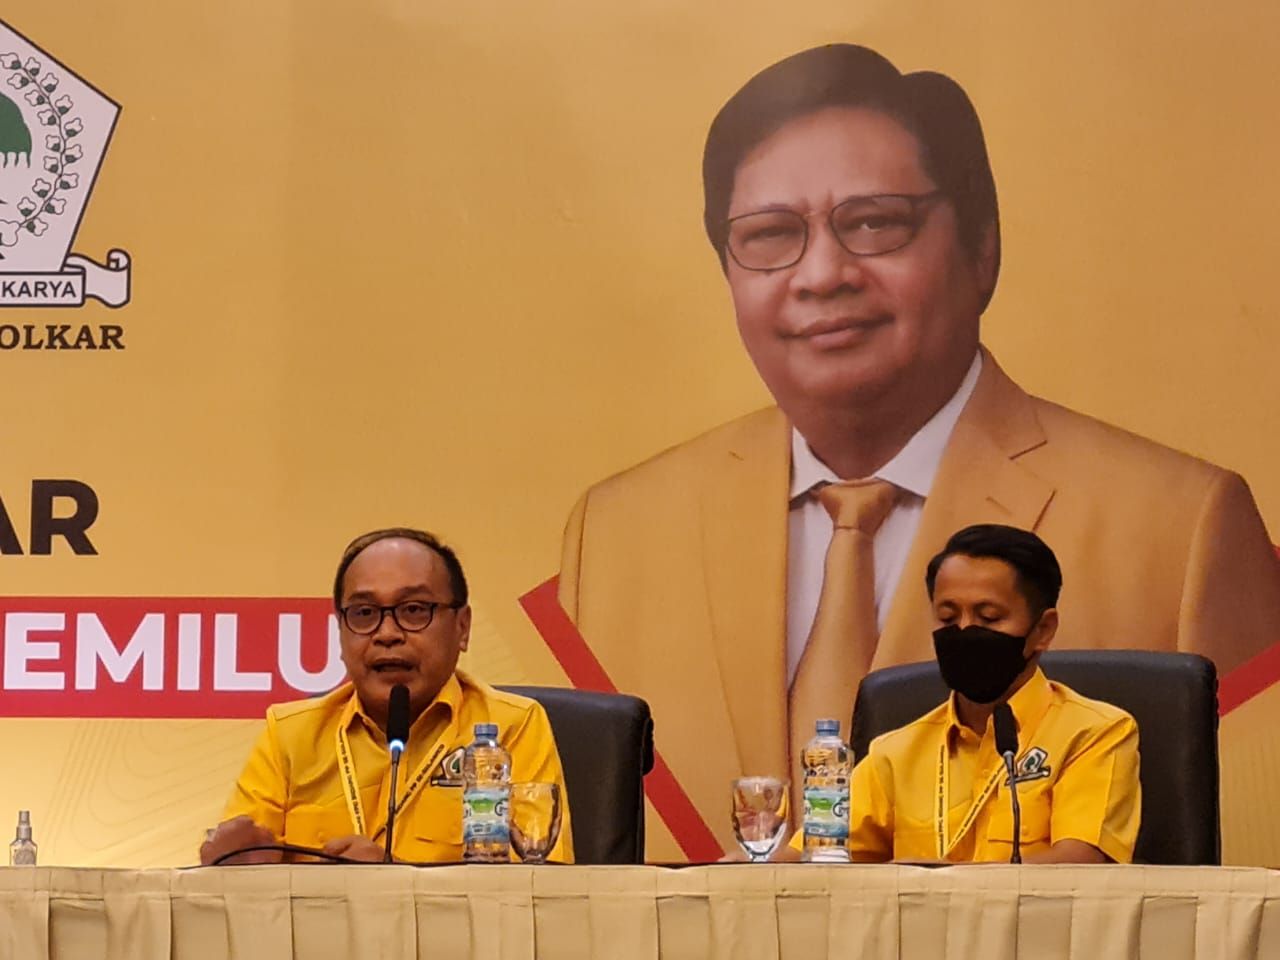 Supriansa : Anggota Fraksi Golkar se-Sulawesi Siap Menangkan Pemilu